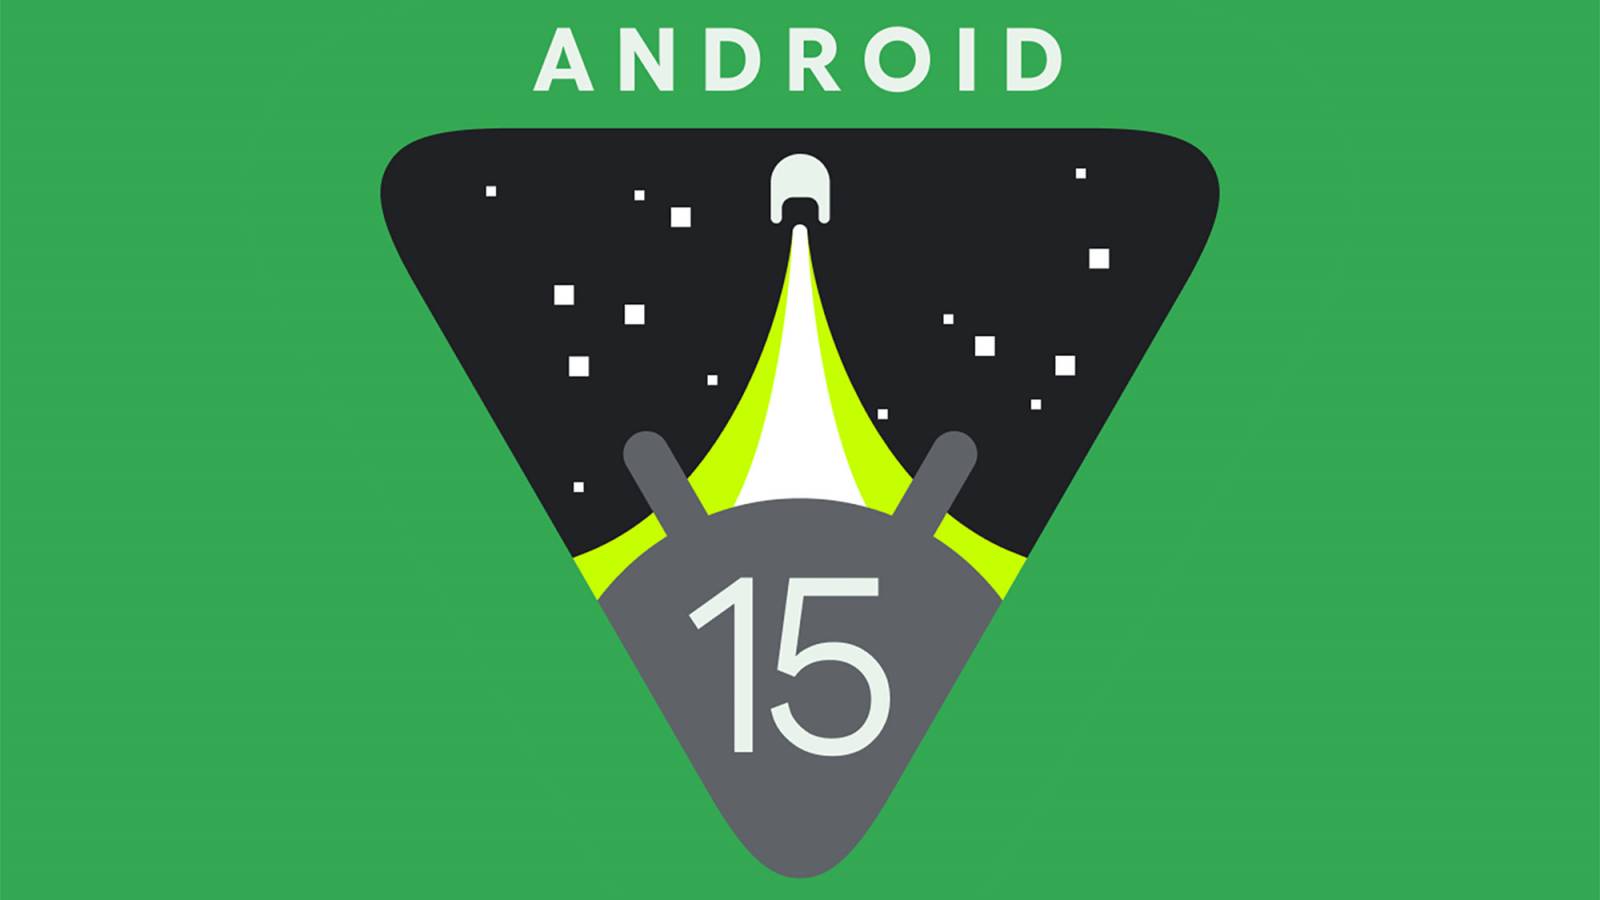 Das Update auf Android 15 erzwingt größere Änderungen bei Anwendungen